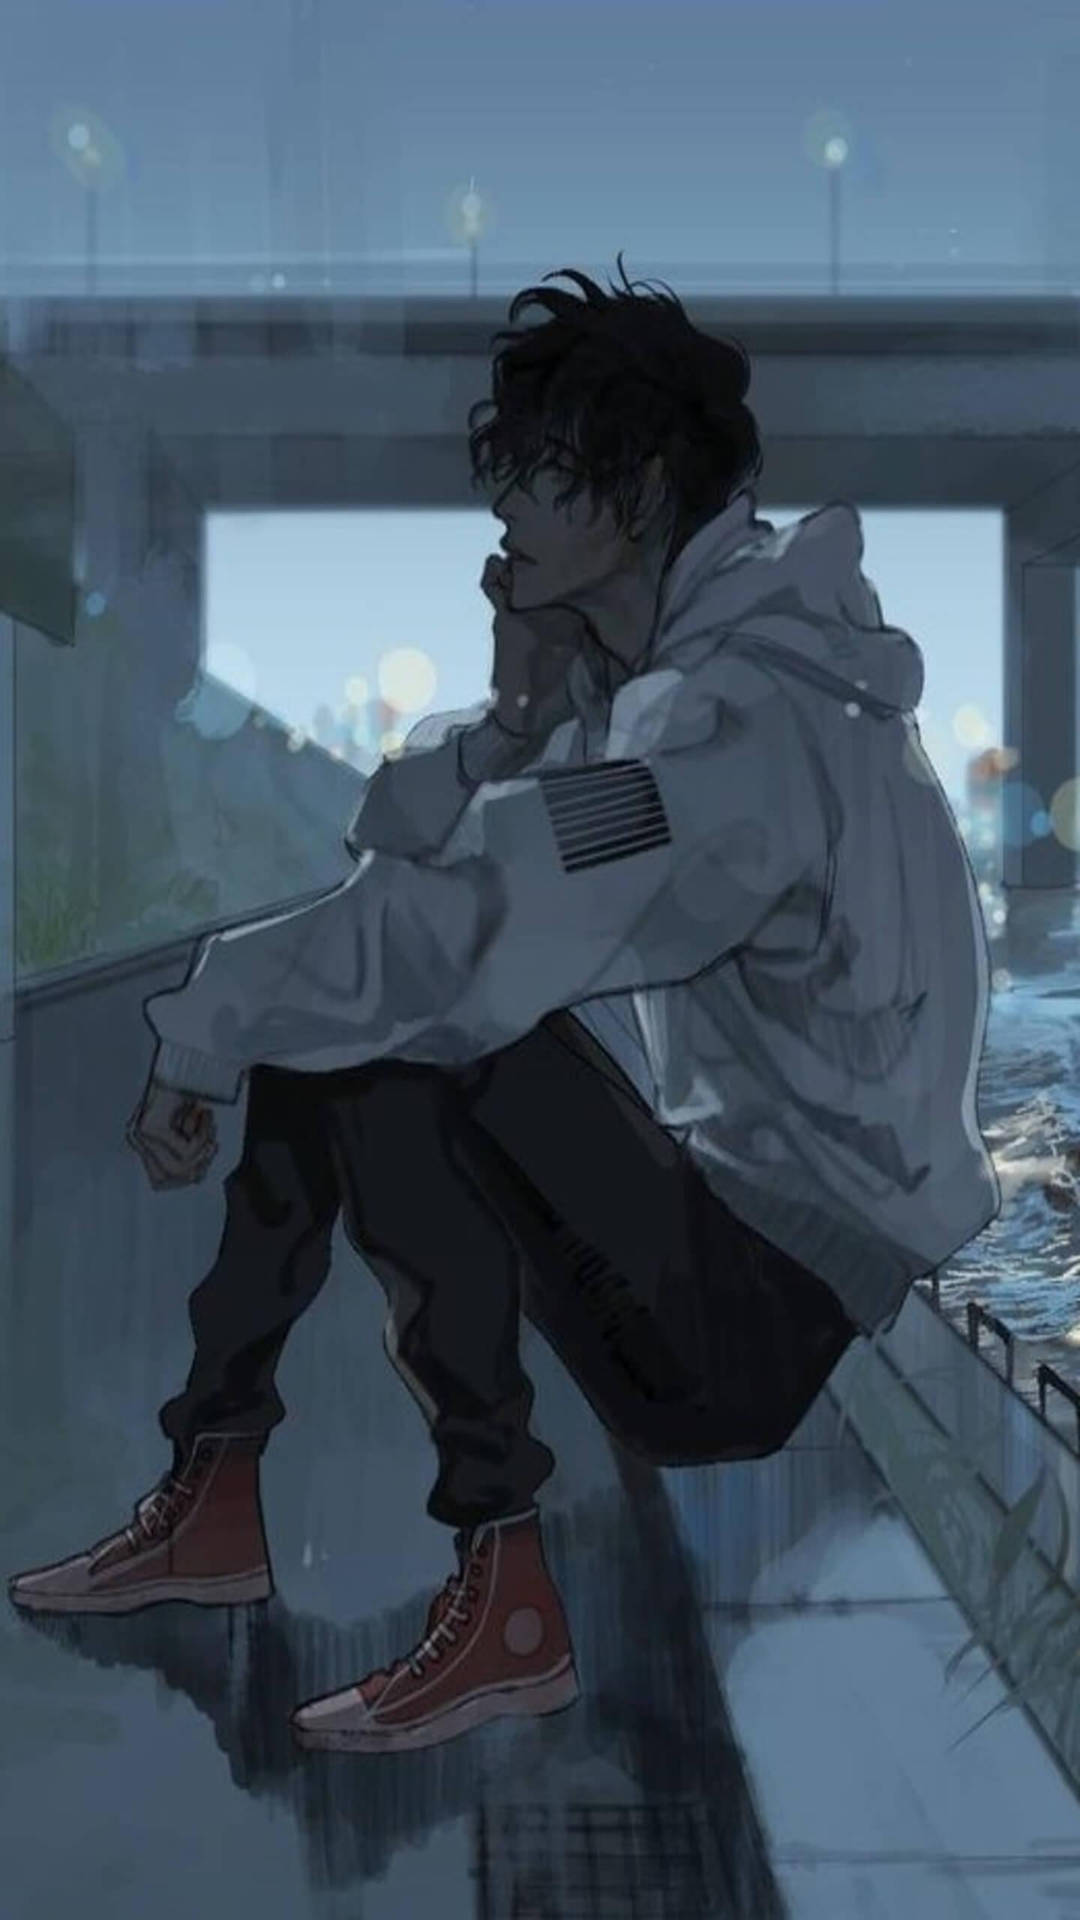 Sad Anime White Jacket Aesthetic Background